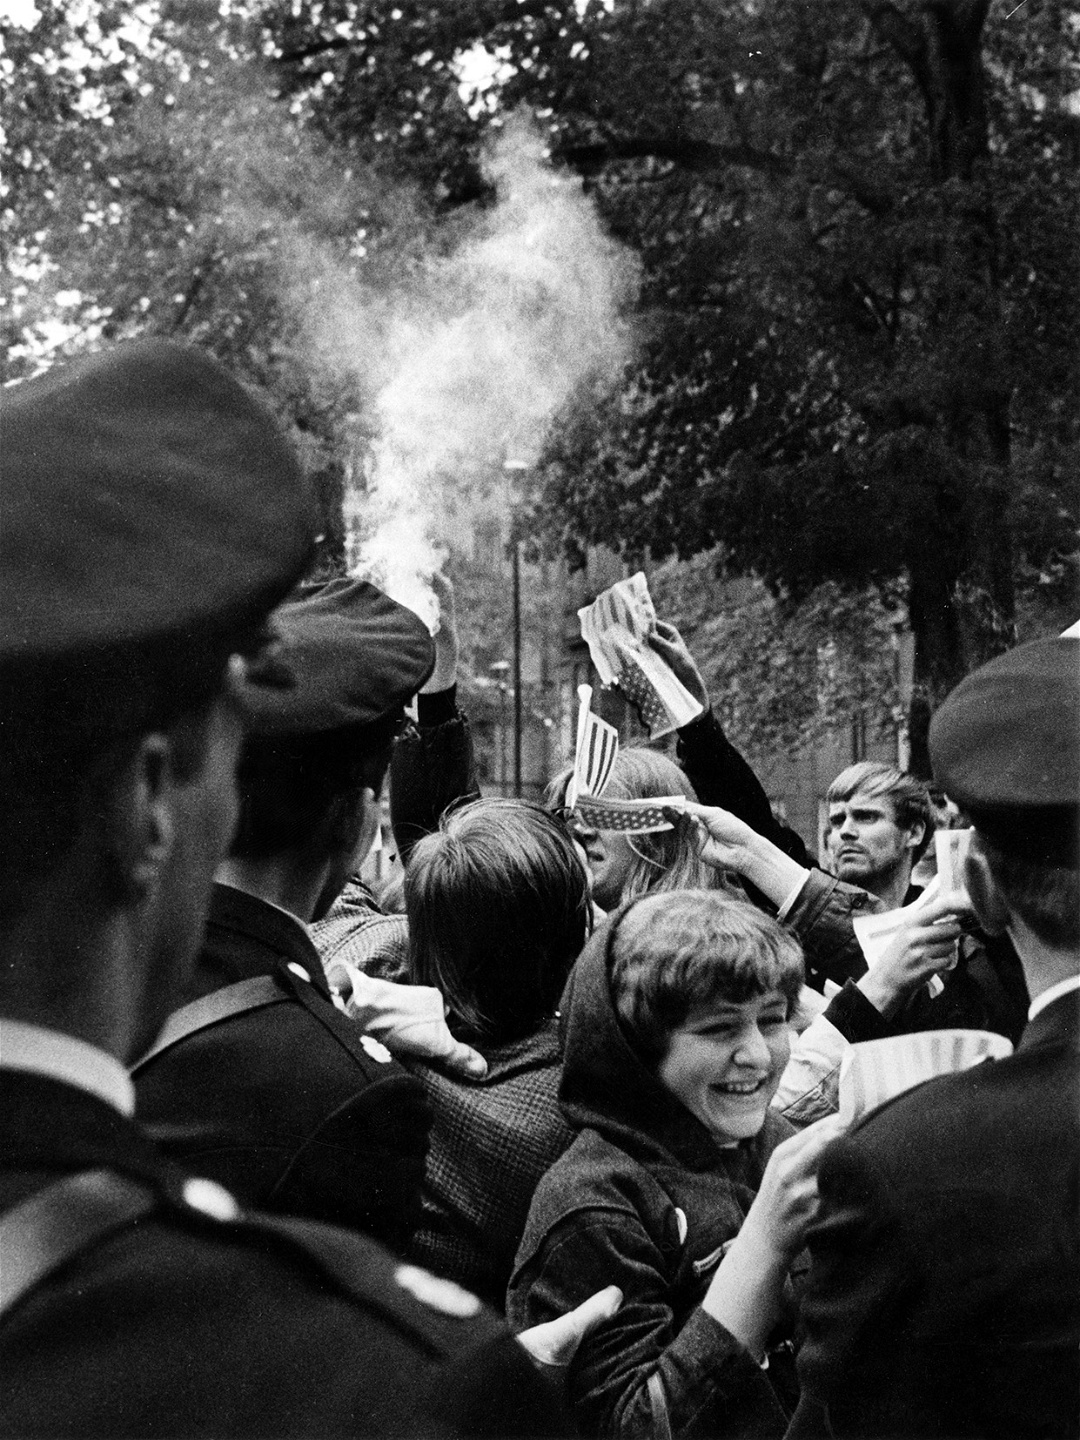 Ungdomar bränner USA:s flagga utanför den ame­rikanska ambassaden Stockholm den 28 maj 1966, i protest mot USA:s krig i Vietnam. Vietnamrörelsen blev en katalysator för mycket av det radikala 1968.